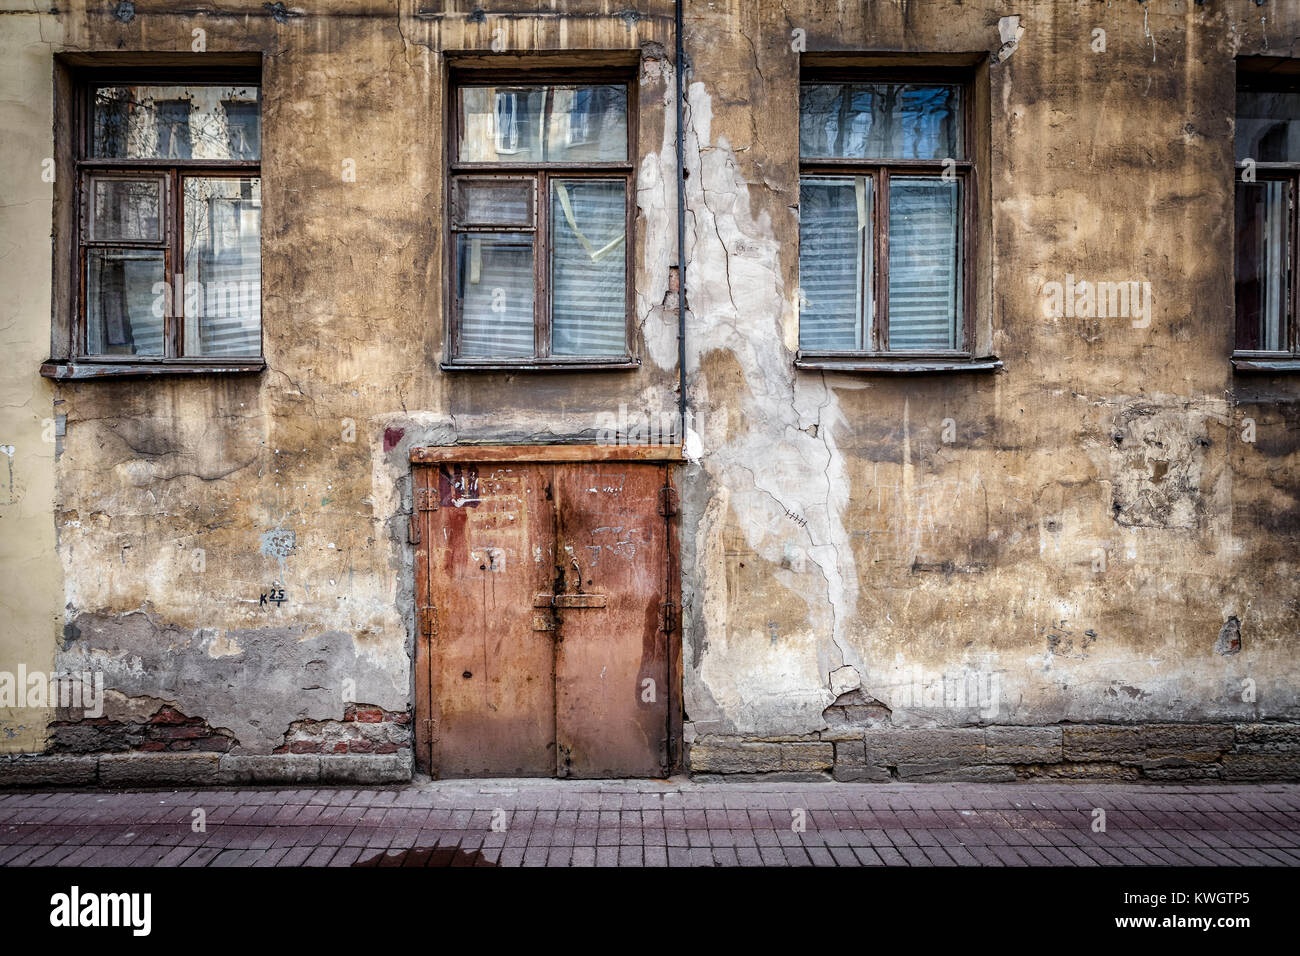 Dans la texture du mur de Saint Petersburg Russie représentant une porte et fenêtres Banque D'Images